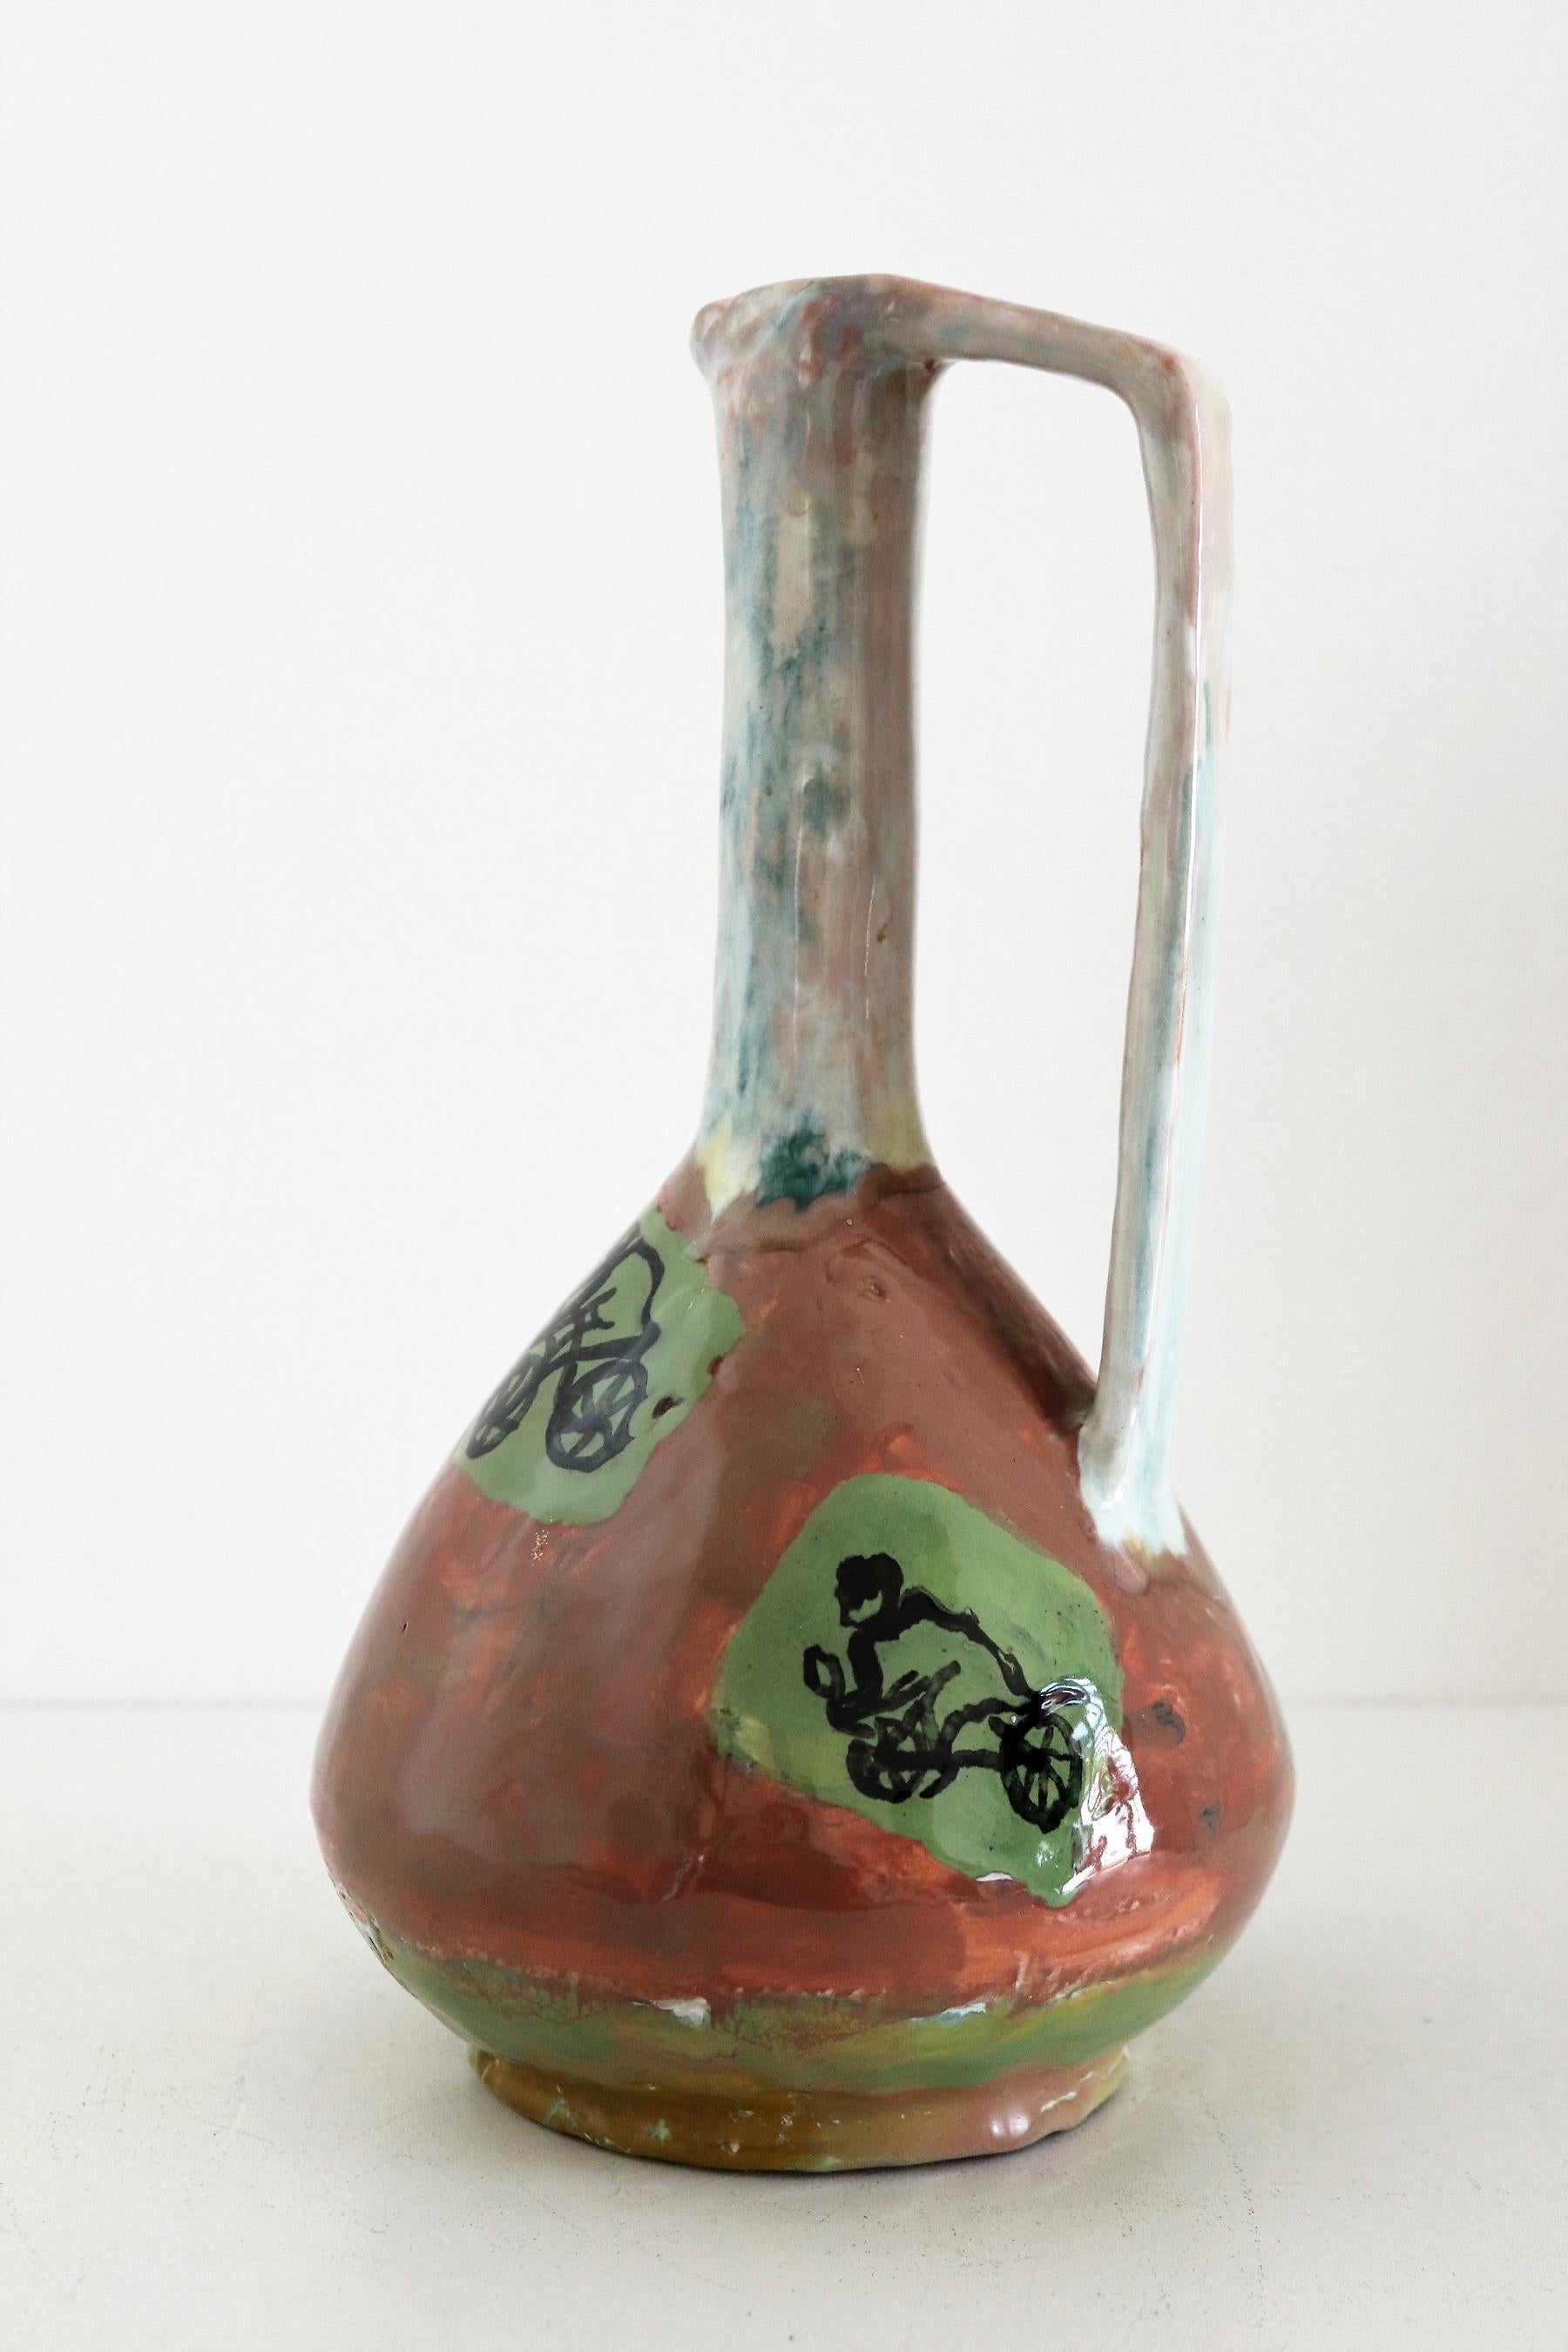 Wunderschöne und seltene, einzigartige Keramikvase, handbemalt und signiert mit N.D.R. vom Künstler des italienischen Keramikstudios Orobico Arte Artigianato (ART RUMI) in den 1950er Jahren.
Die Vase ist aus keramischem, rotem Ton gefertigt und von